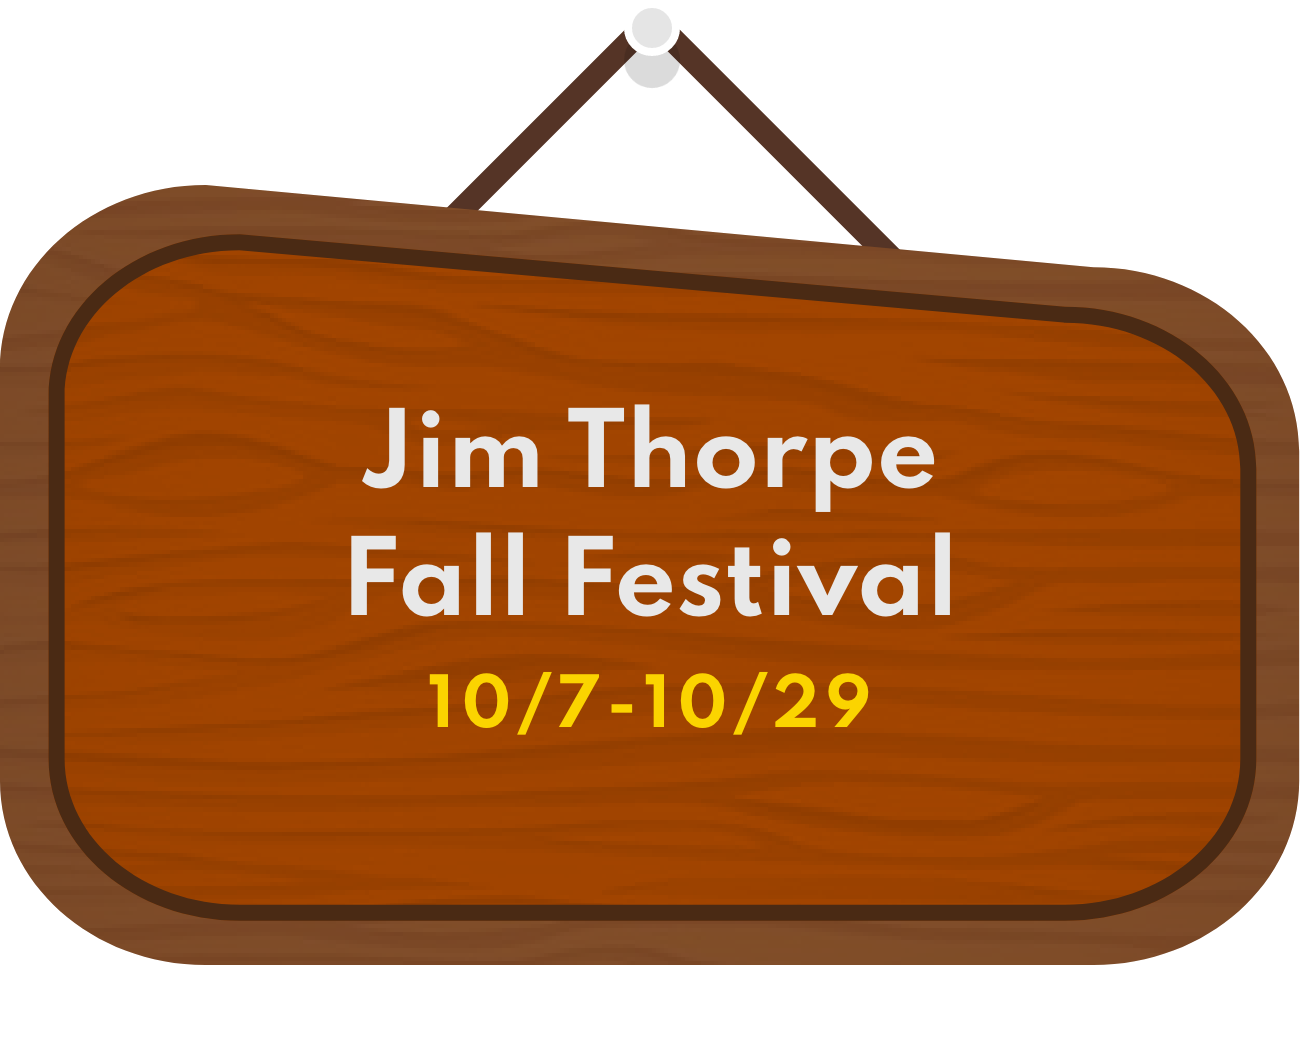 Jim Thorpe Fall Festival 10/7-10/29